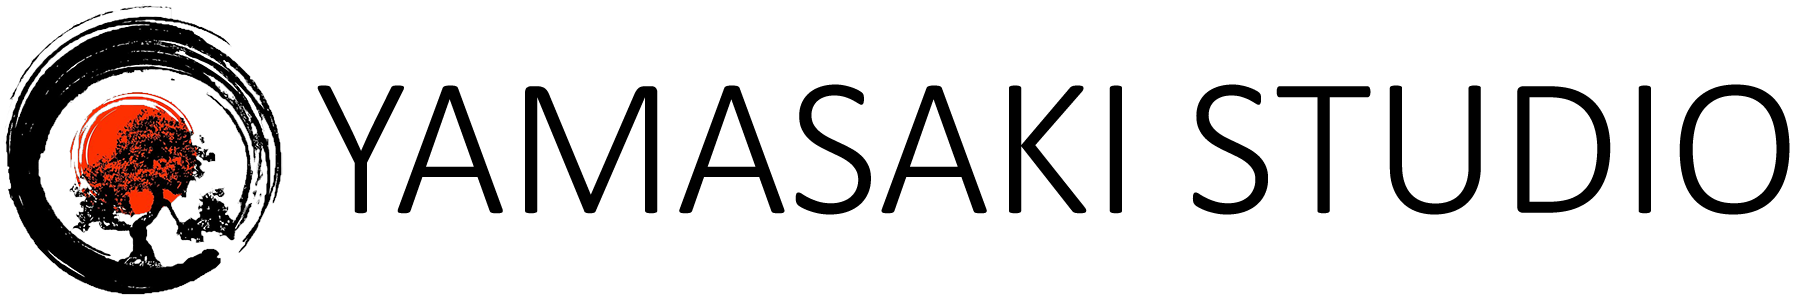 yamasaki logo